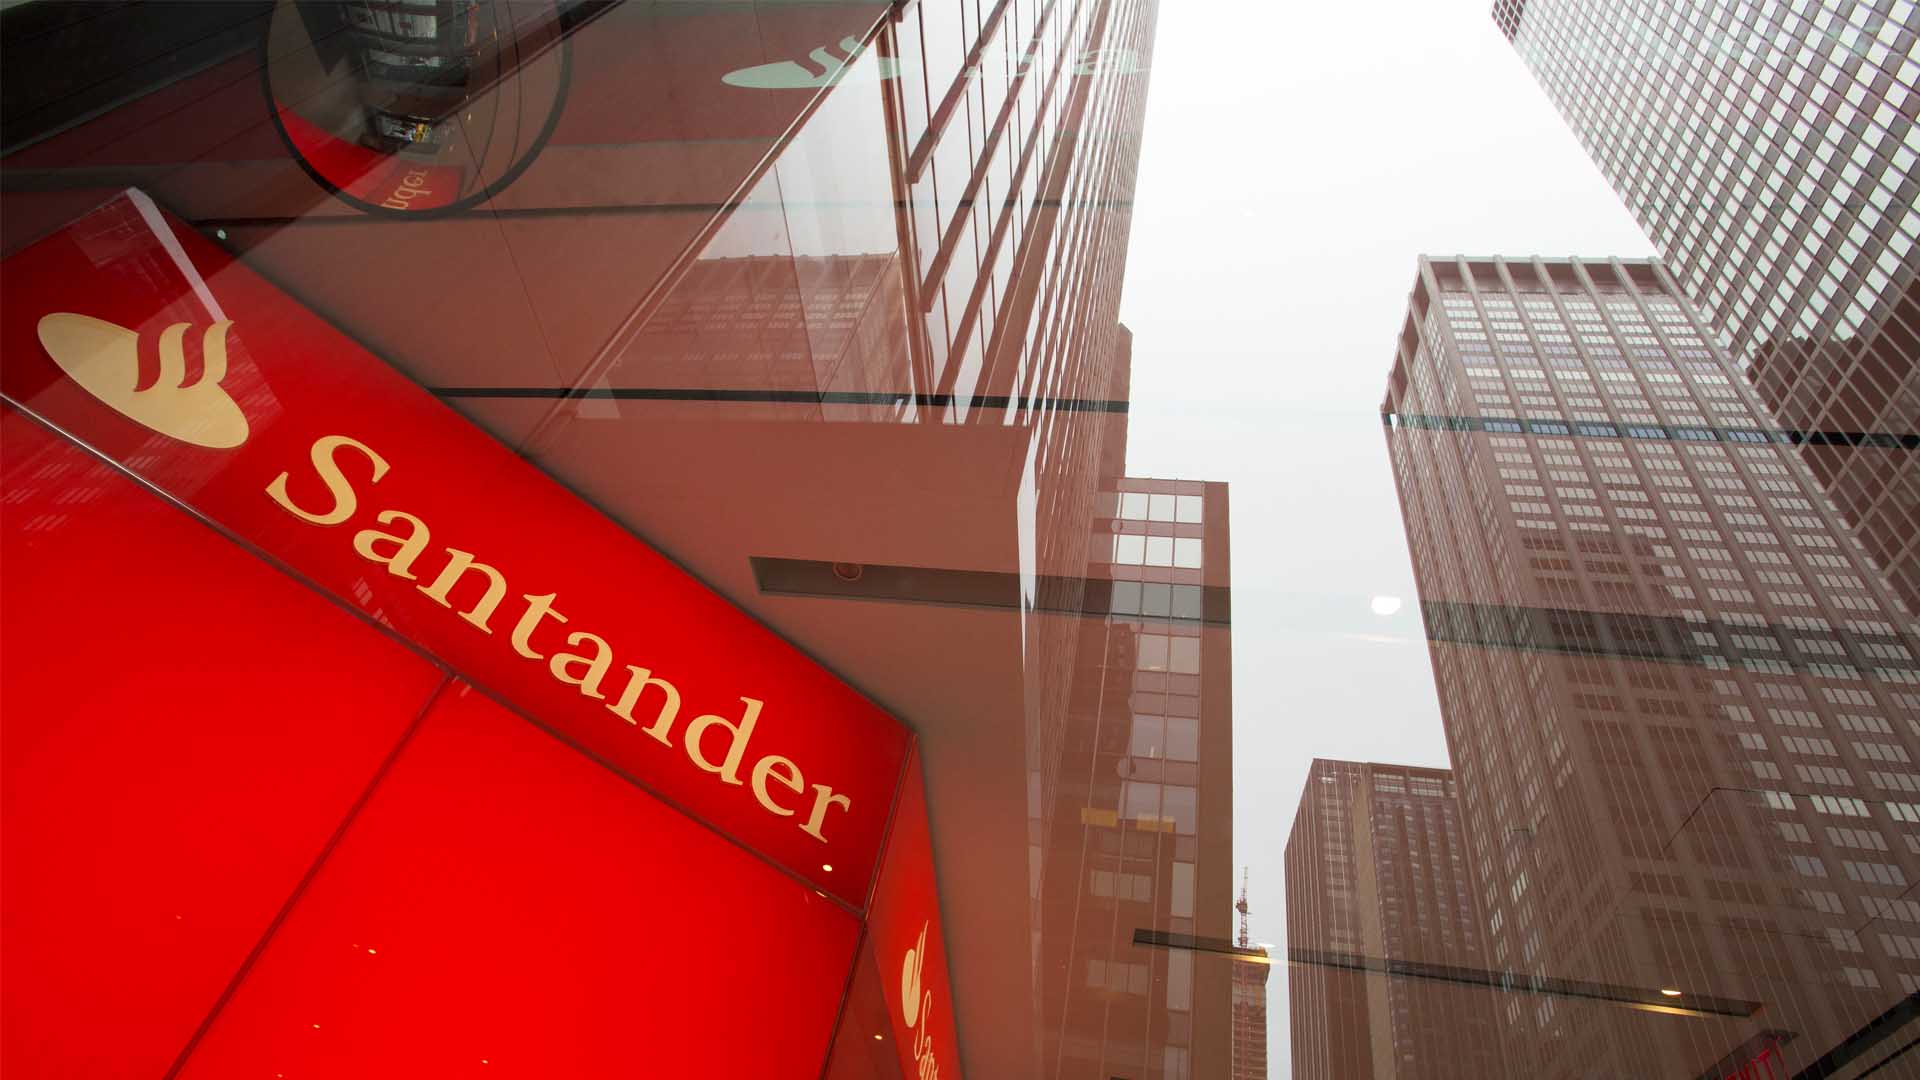 Un juzgado condena al Santander a abonar el impuesto de hipotecas de forma retroactiva